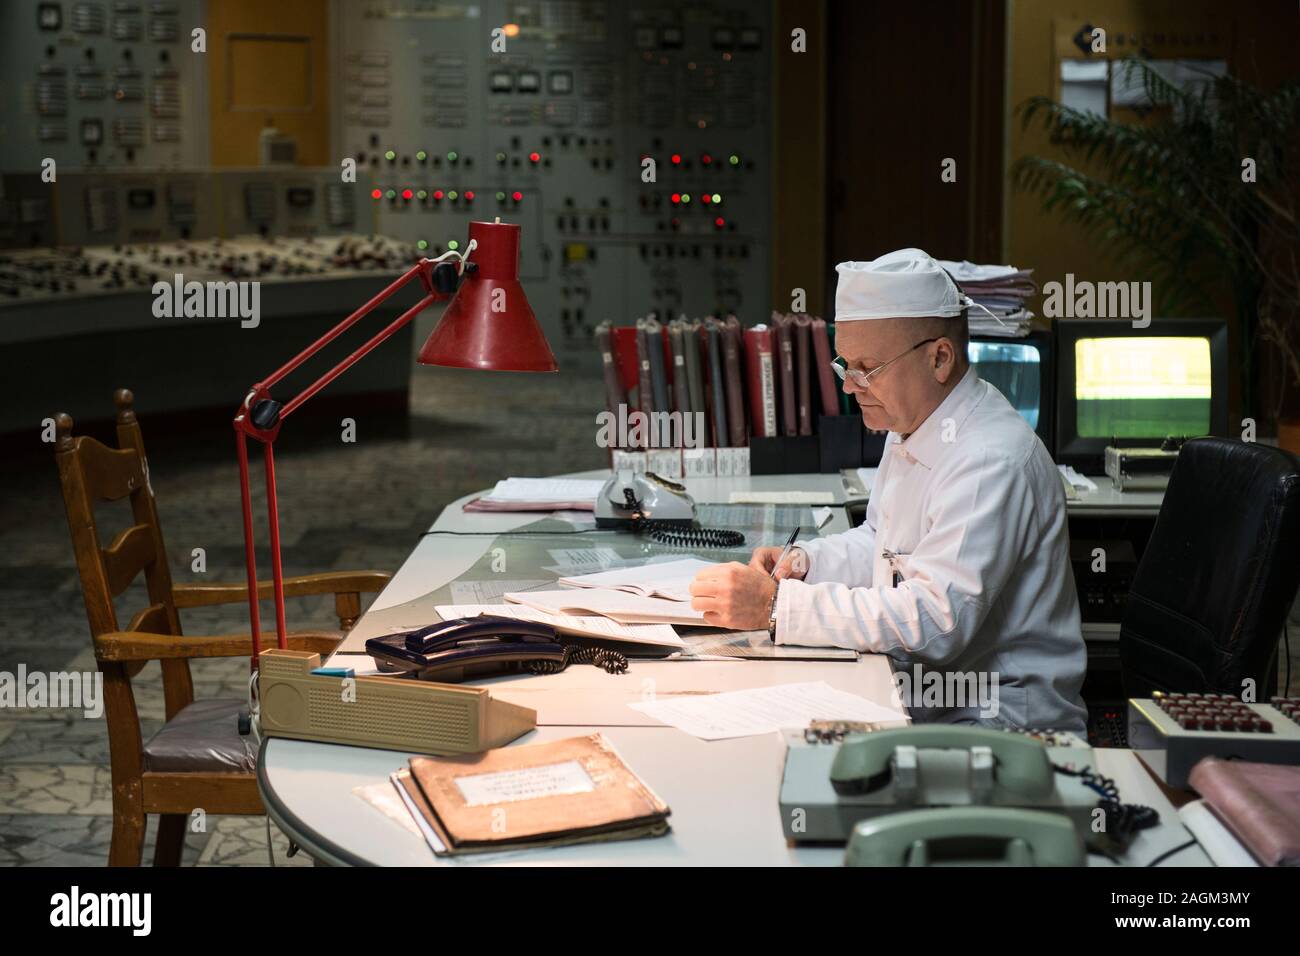 Ein Mitarbeiter des Kernkraftwerks Tschernobyl Arbeiten im Kontrollraum des Reaktors 2 des Kernkraftwerks Tschernobyl. Die Zimmer hat seinen ursprünglichen Displays und Panels der Schaltflächen. Kernkraftwerk Tschernobyl, Tschernobyl, Ivankiv Rajon, Oblast Kiew, Ukraine, Europa Stockfoto